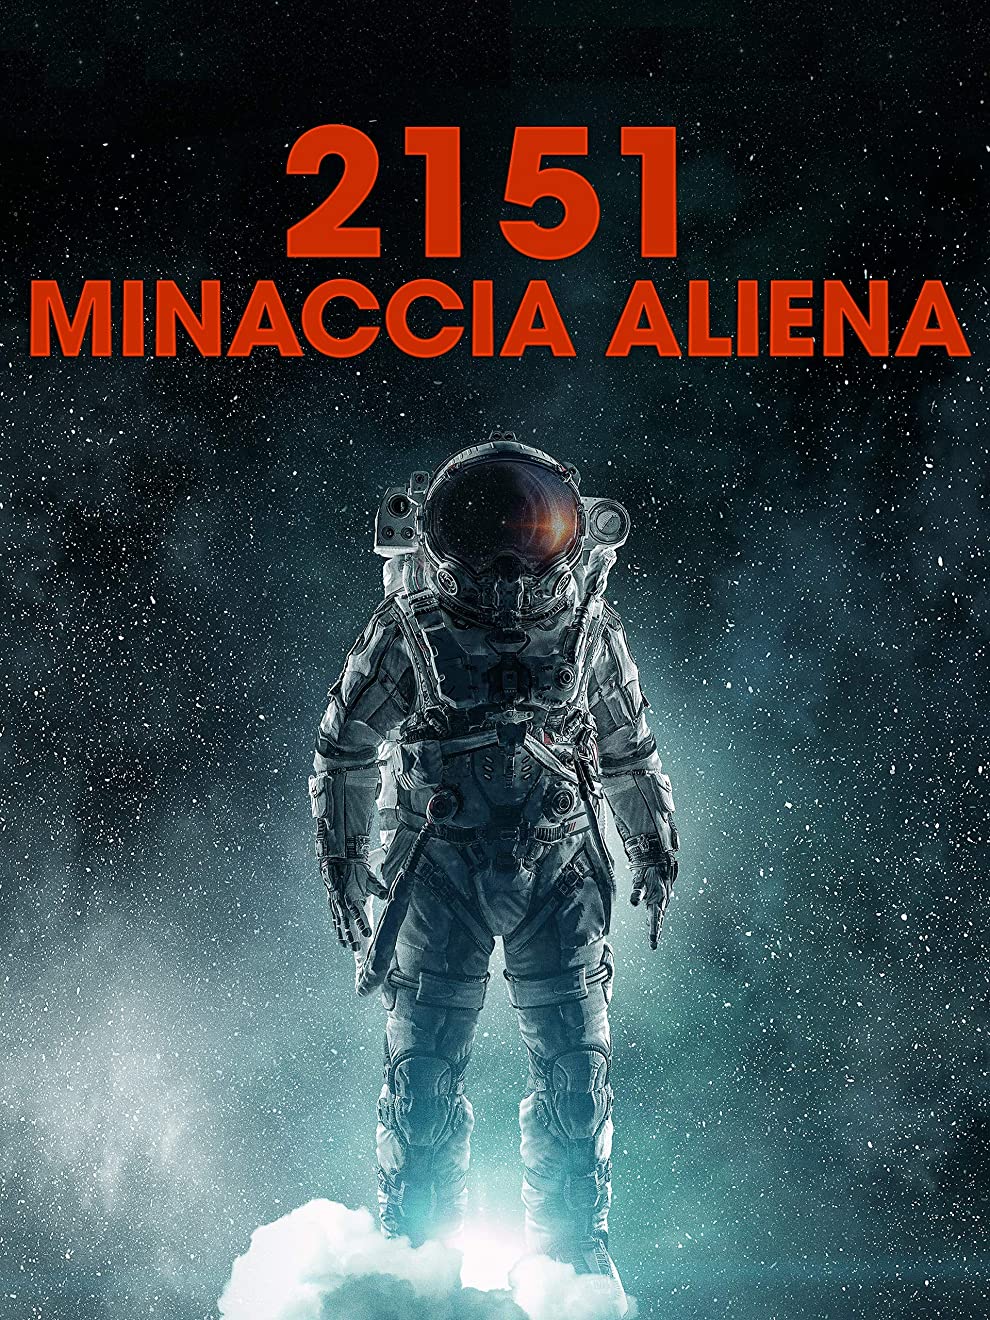 2151: Minaccia aliena [HD] (2017)